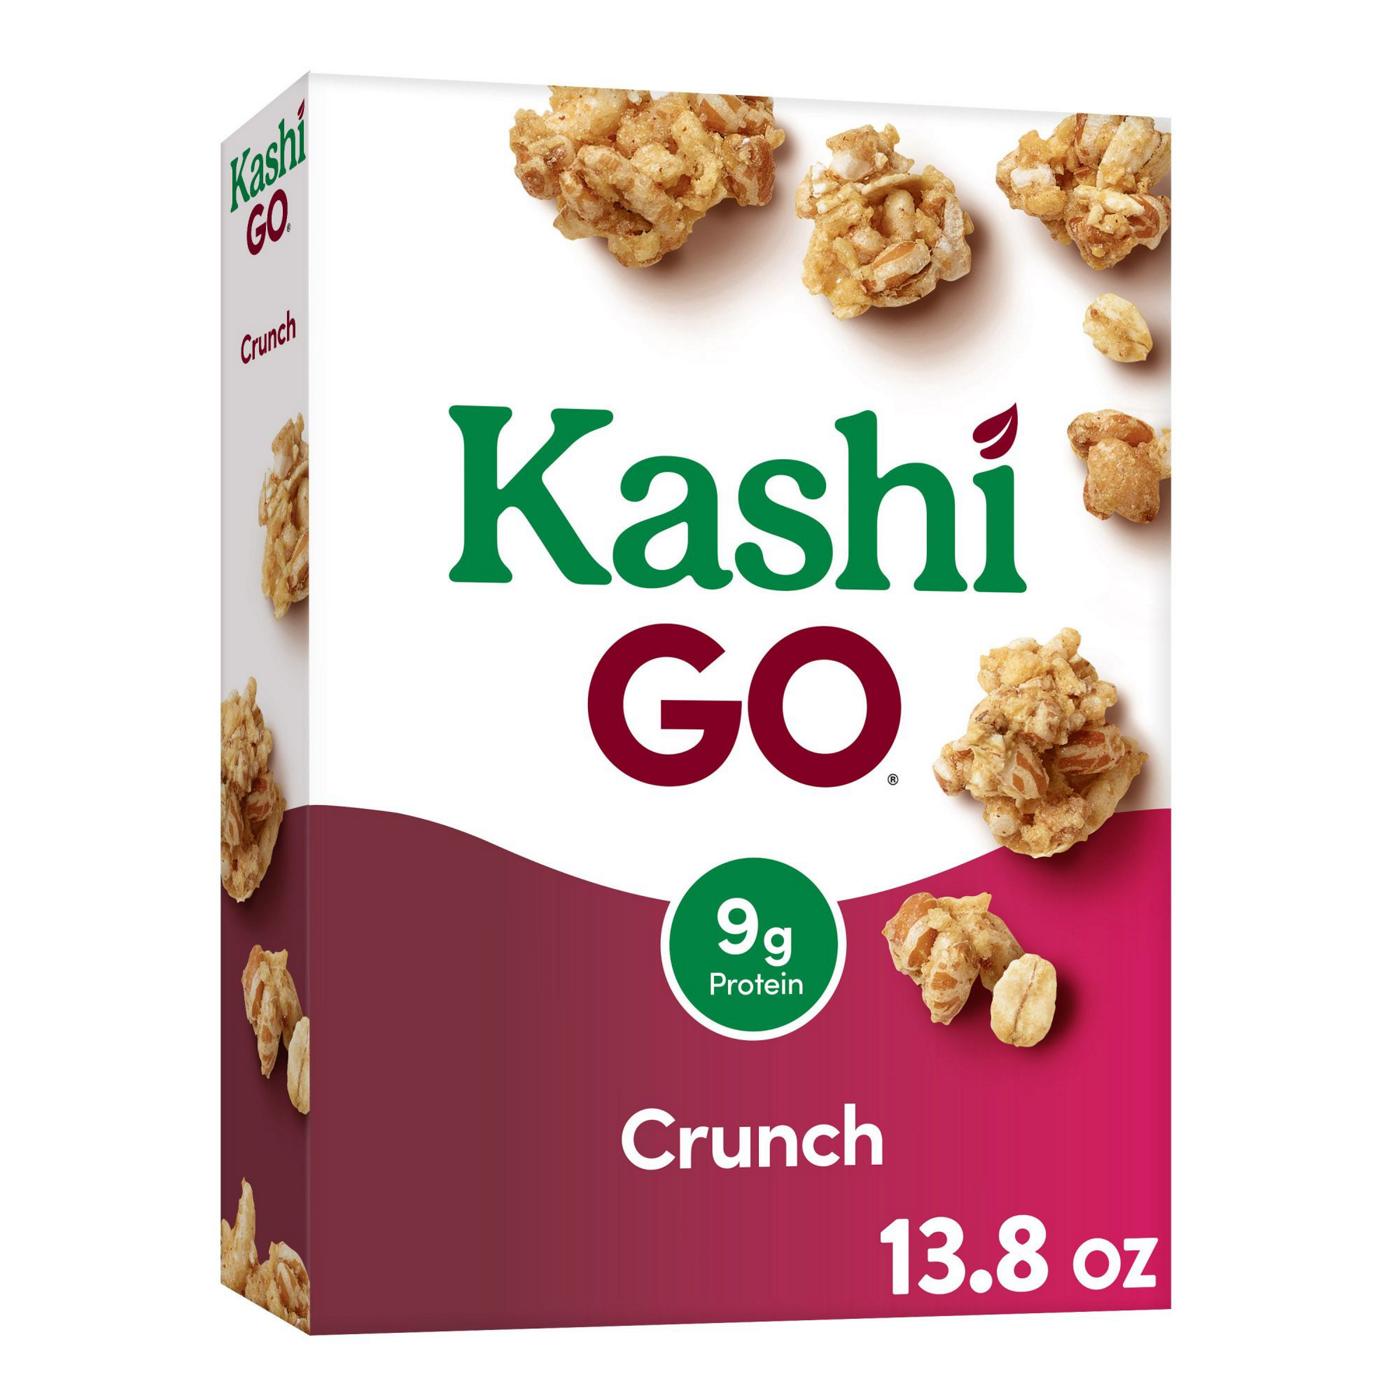 Kashi GO Crunch Breakfast Cereal; image 1 of 11